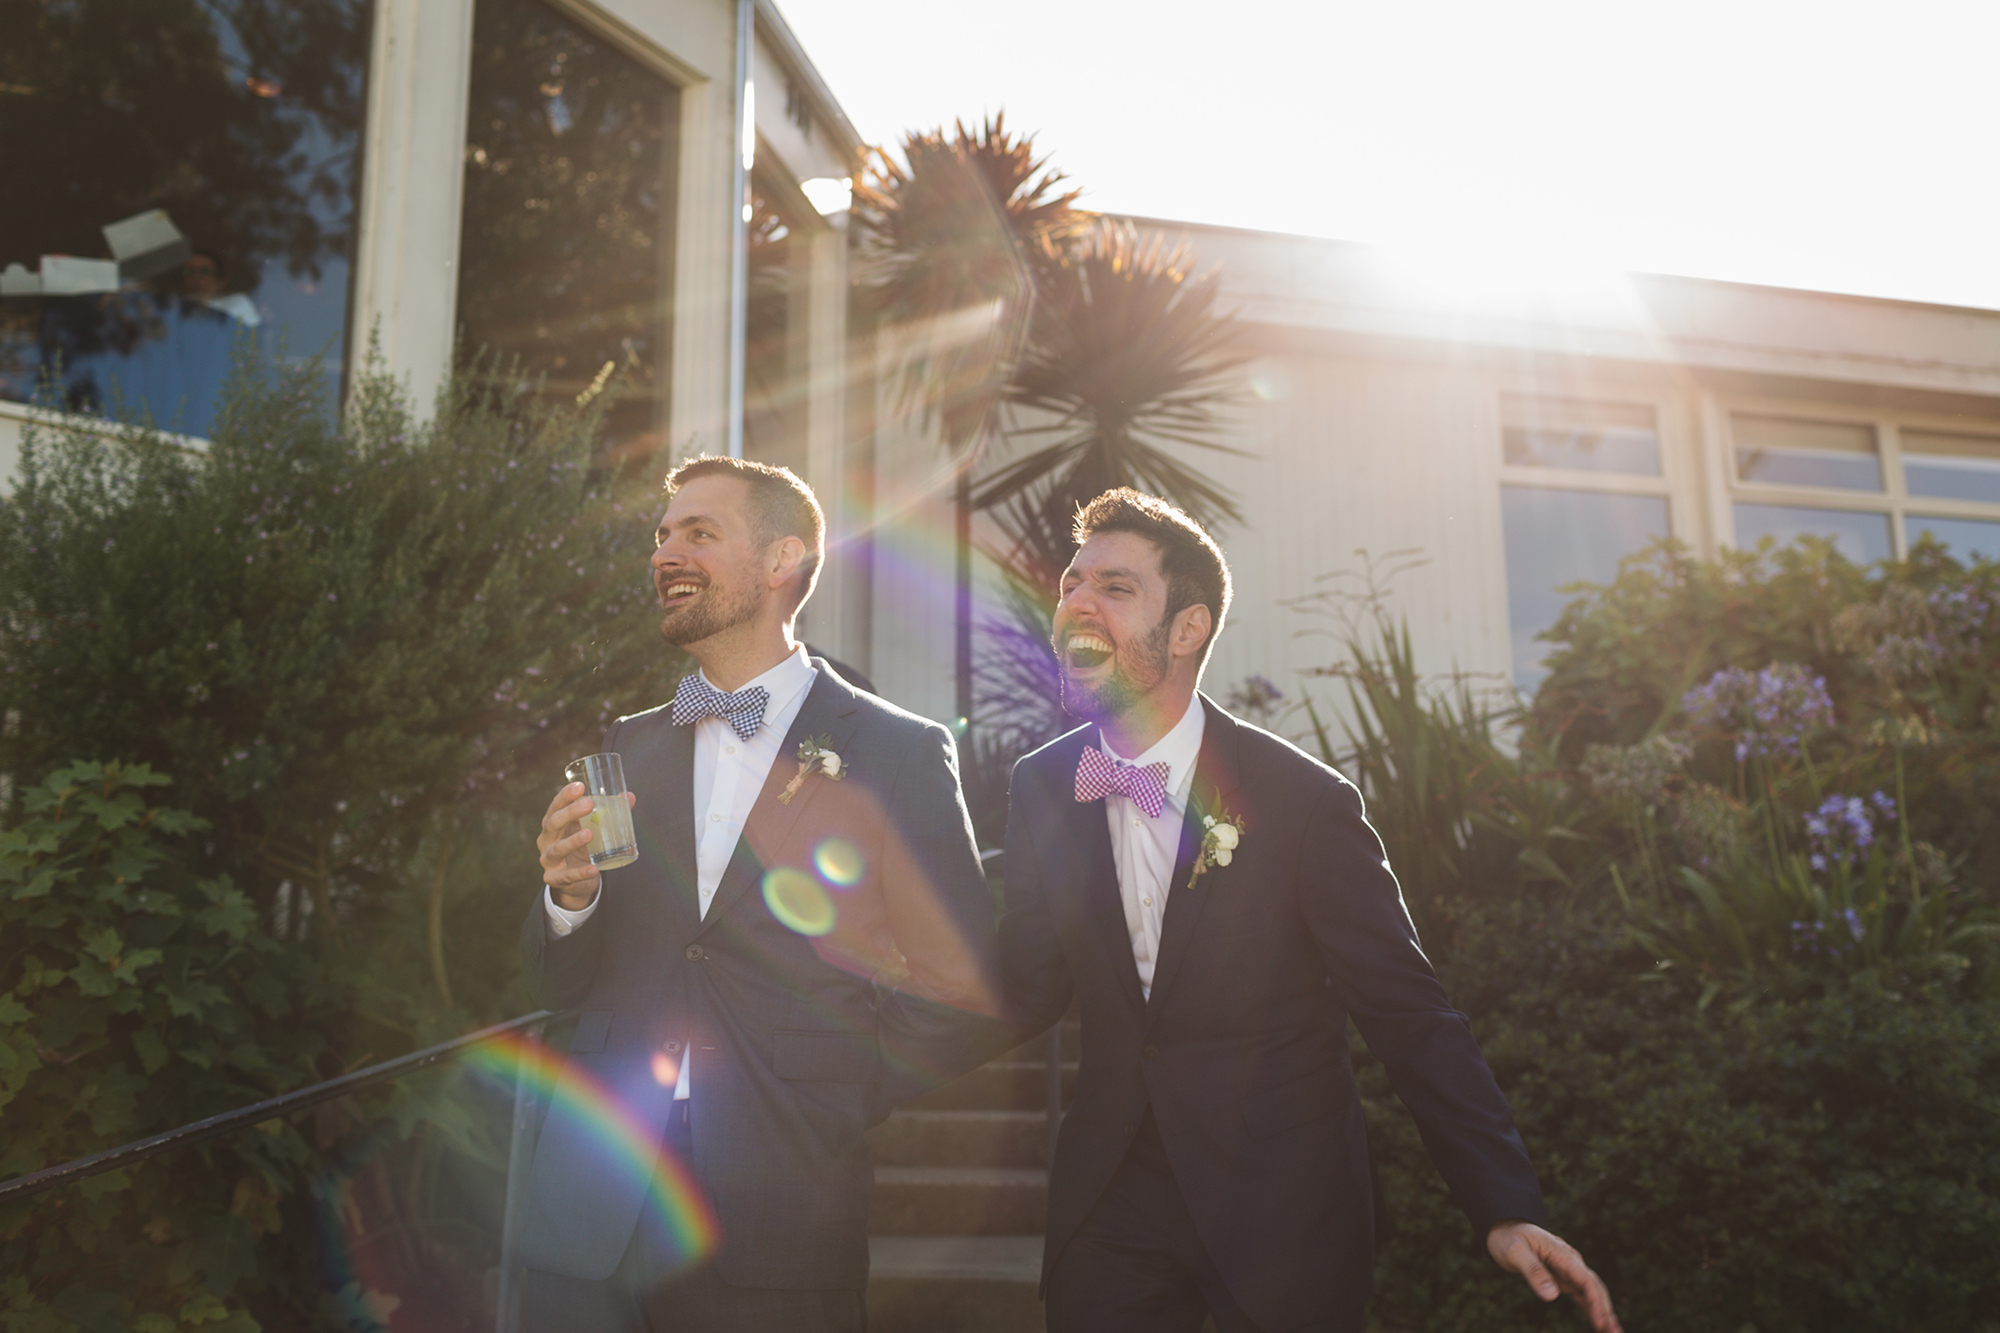 Two men smile on their wedding day.